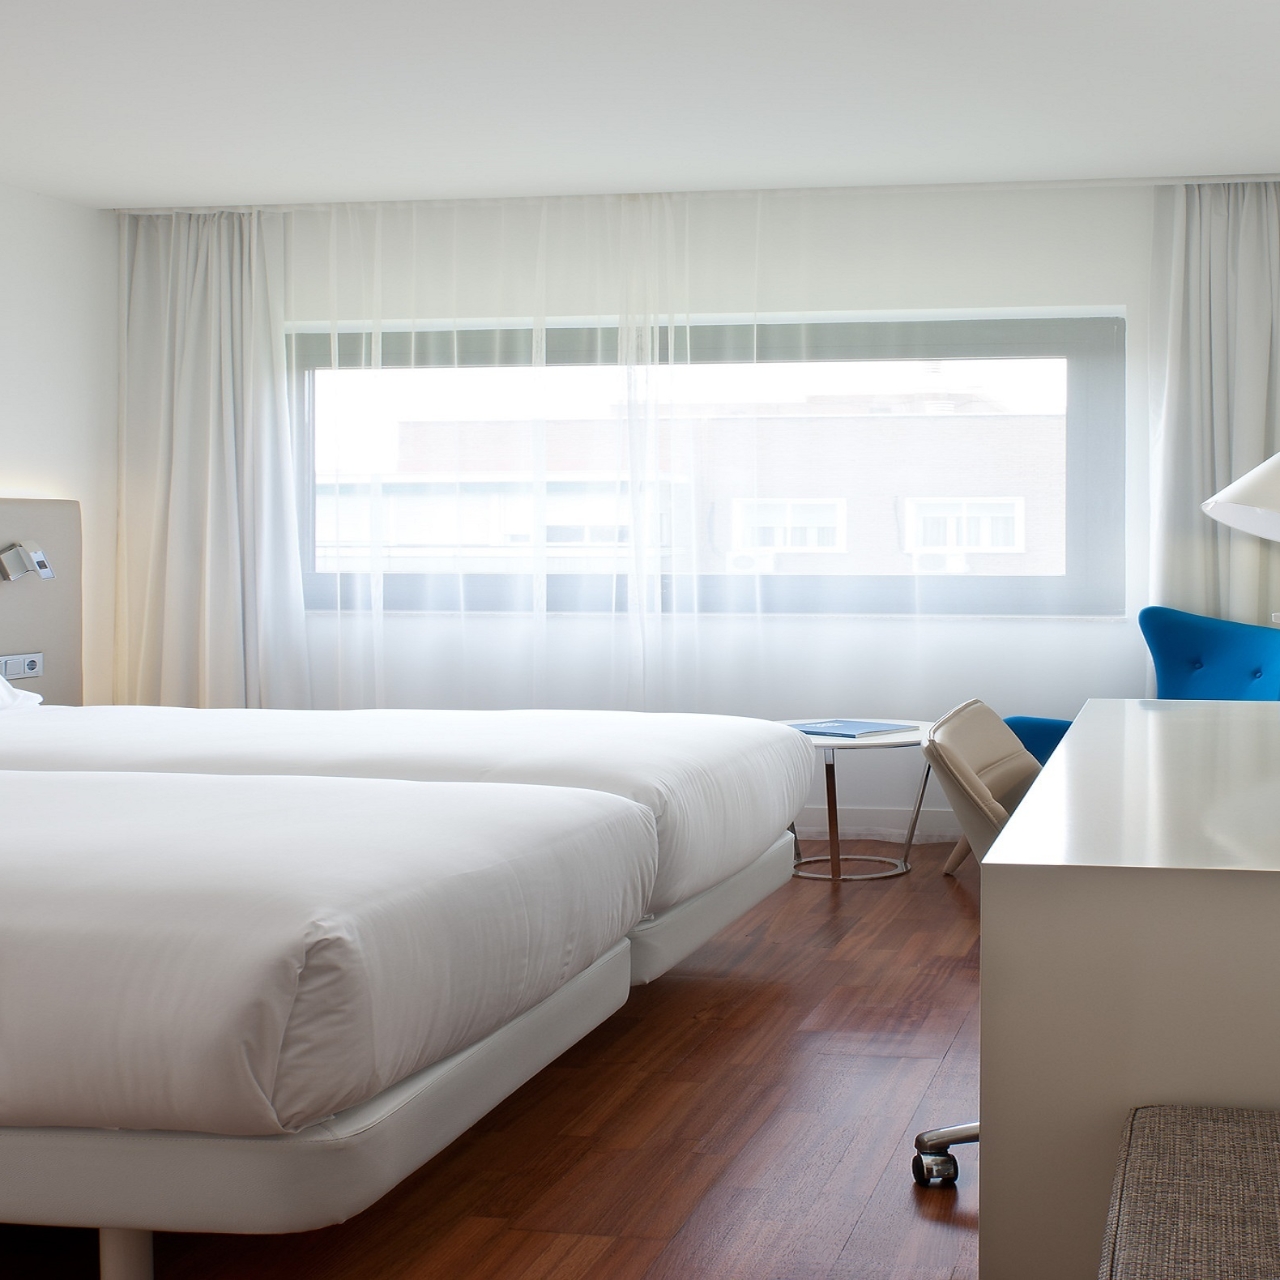 Hotel NH Madrid Ventas en Salamanca, Madrid en HRS con servicios gratuitos